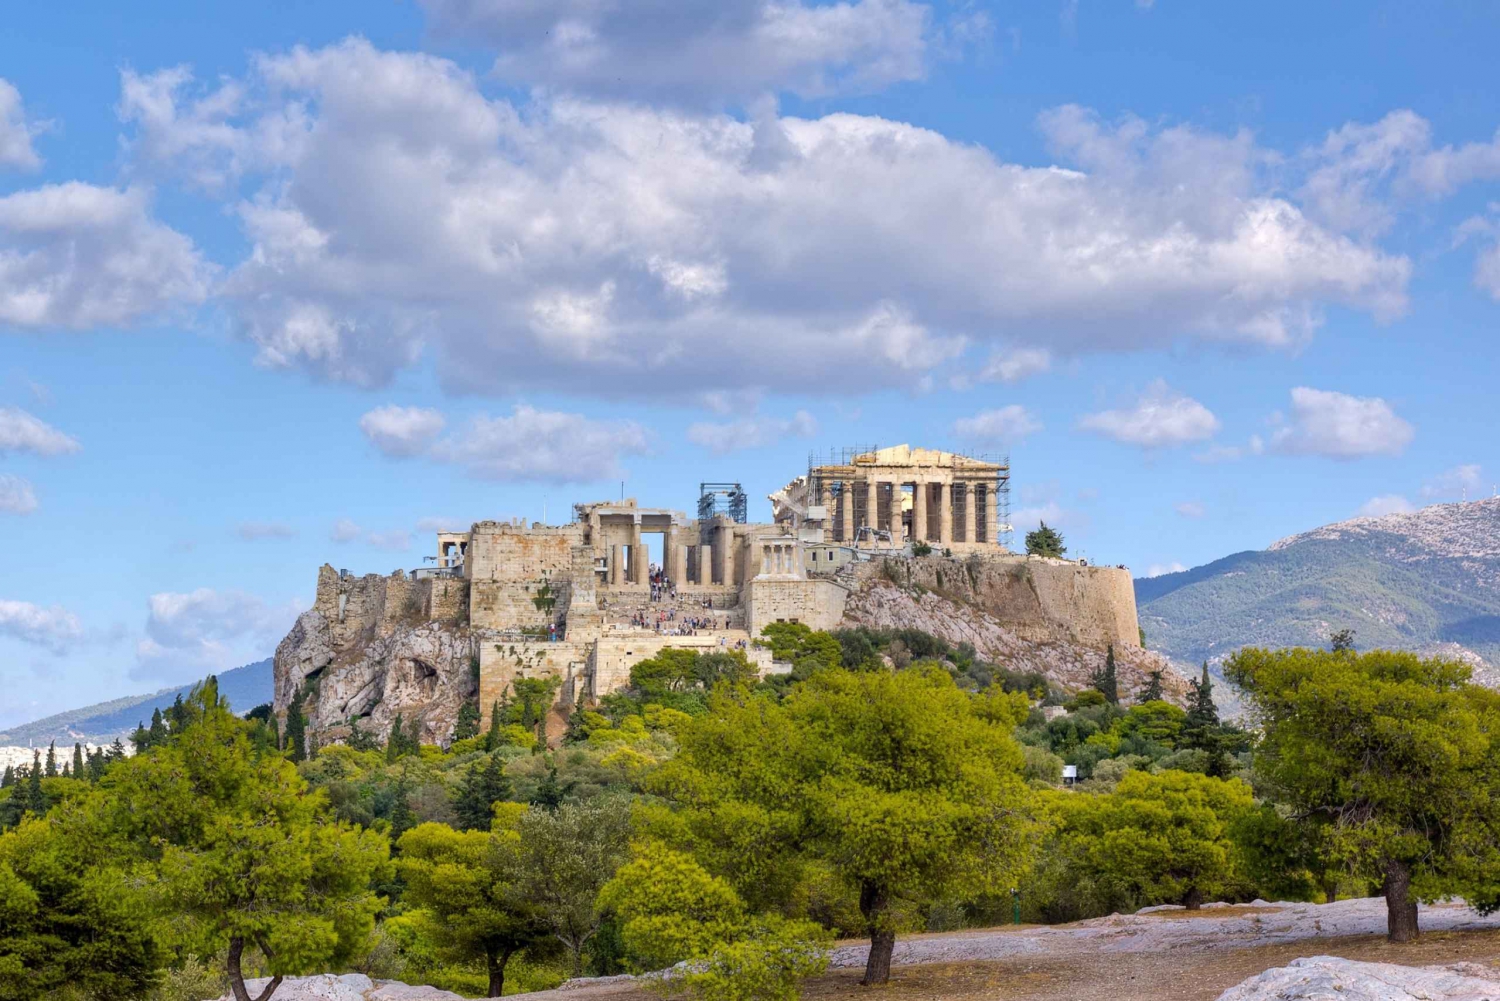 Athen: Plaka zur Akropolis Smartphone Audio Tour